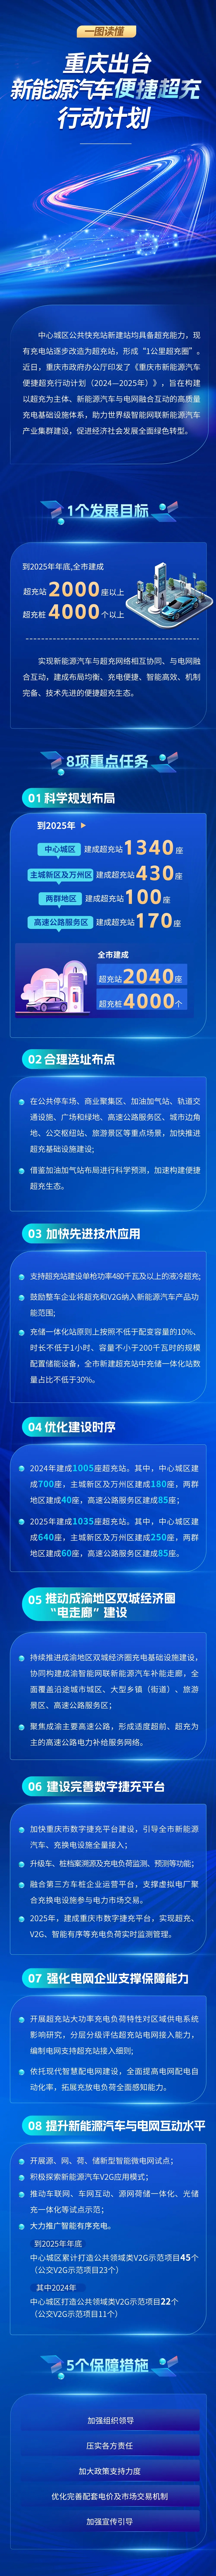 重庆出台新能源汽车便捷超充行动计划